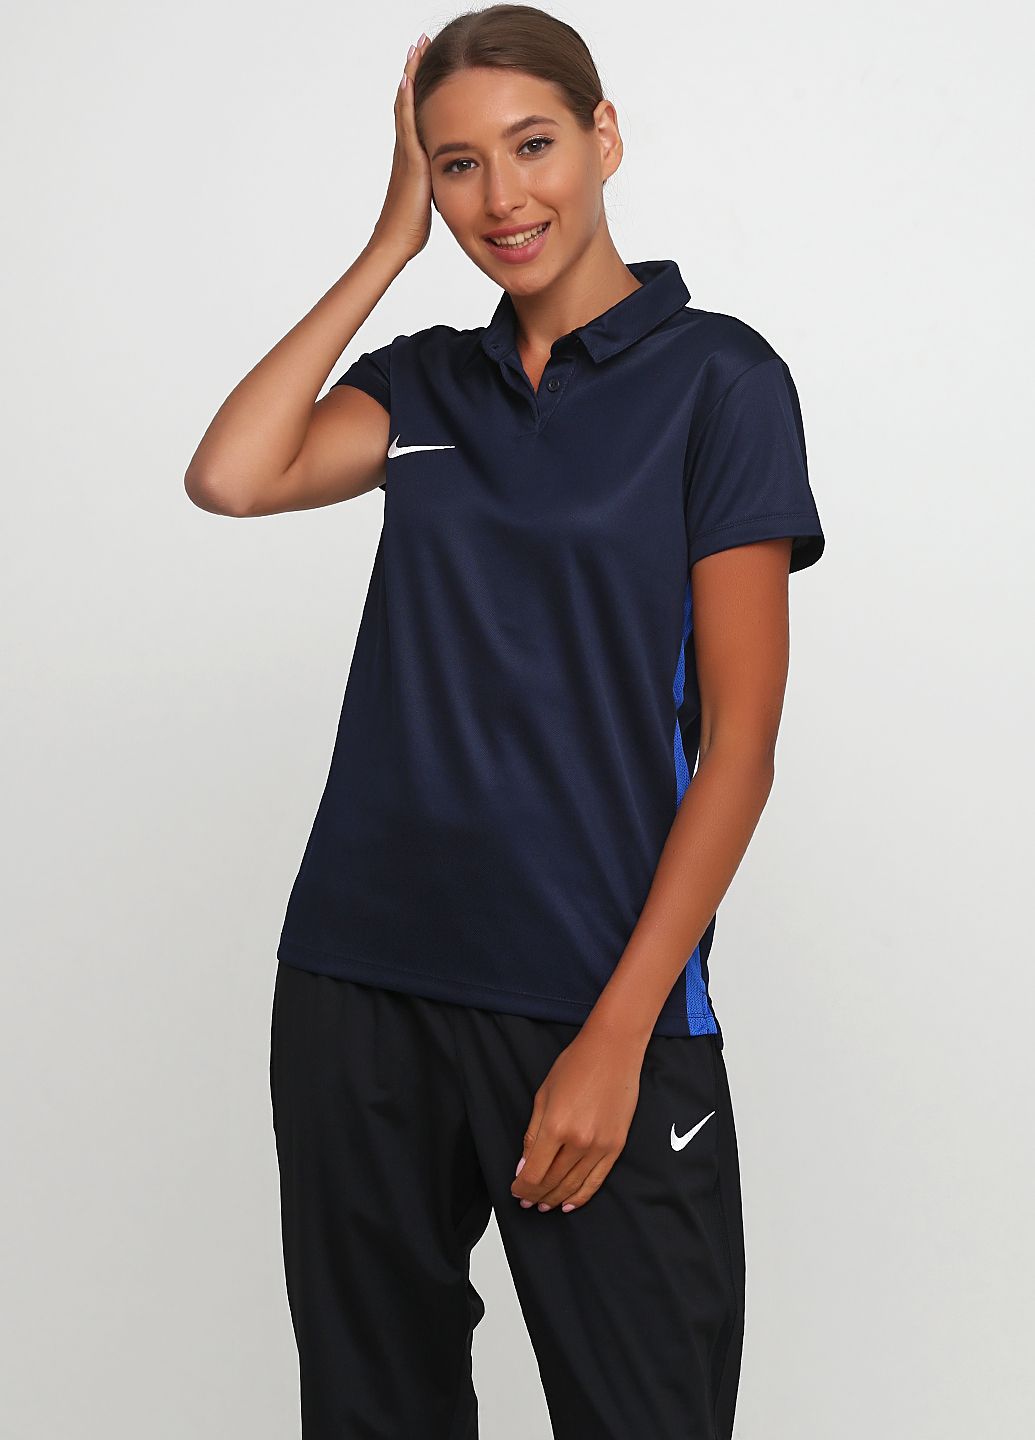 Футболка Nike Women's Dry Academy18 Football Polo